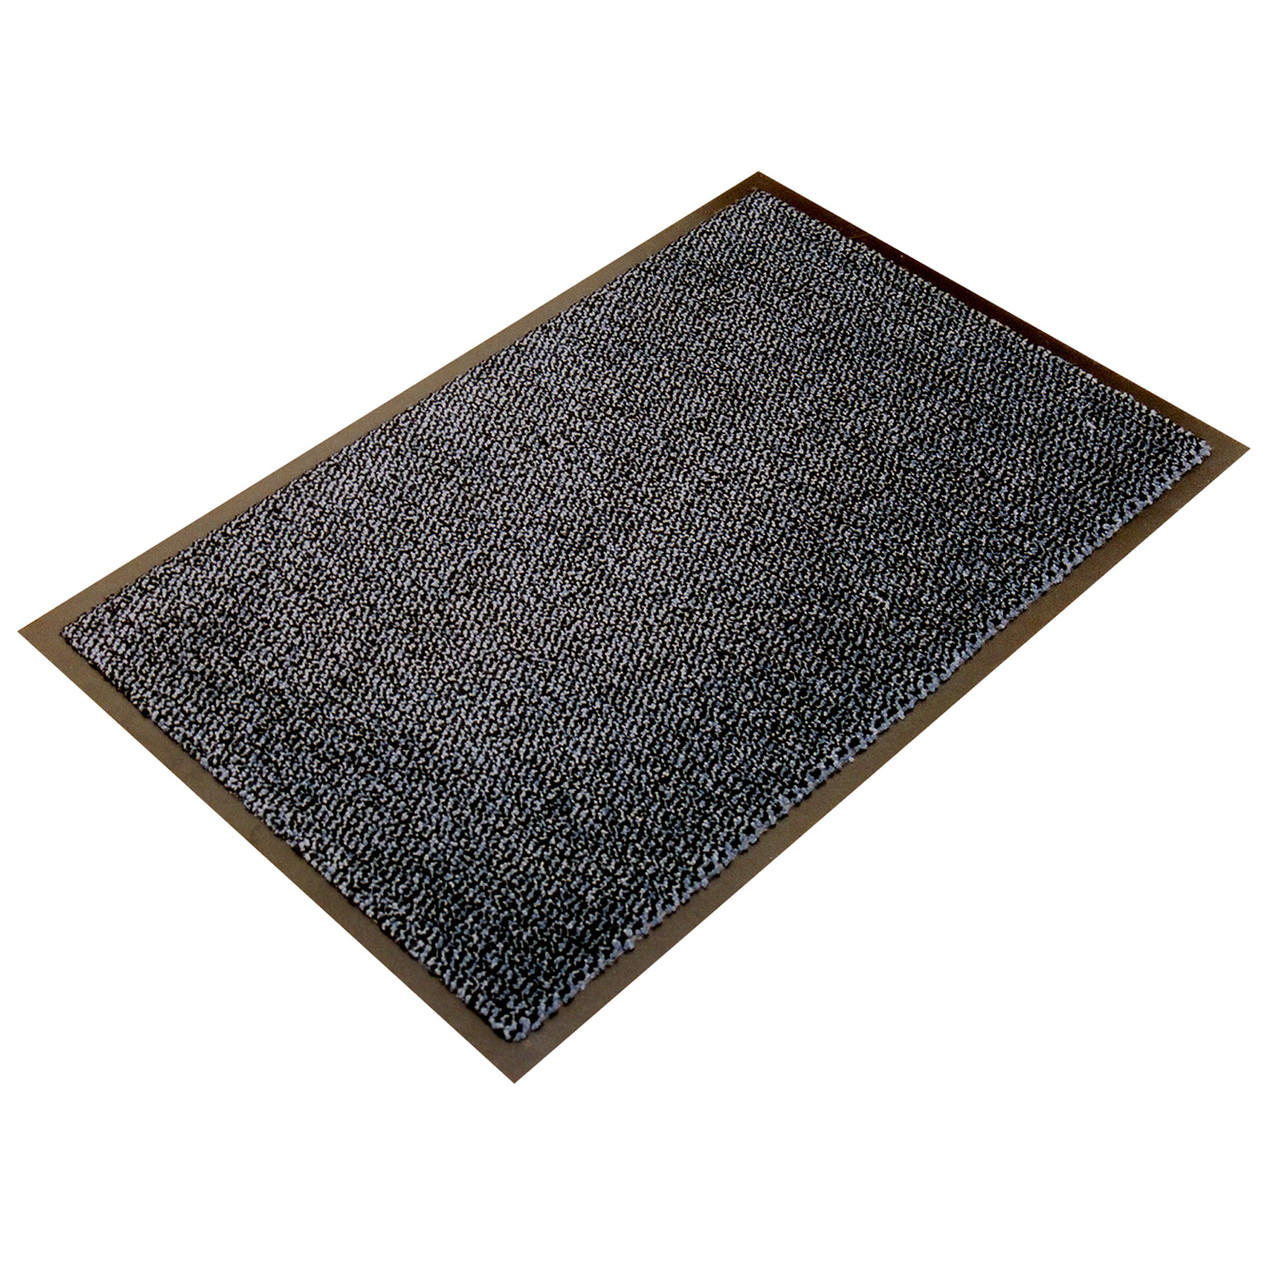 Ultralux ultralux indoor scraper entrance mat, 31 x 47, polypropylene  fibers and anti-slip vinyl backed indoor doormat